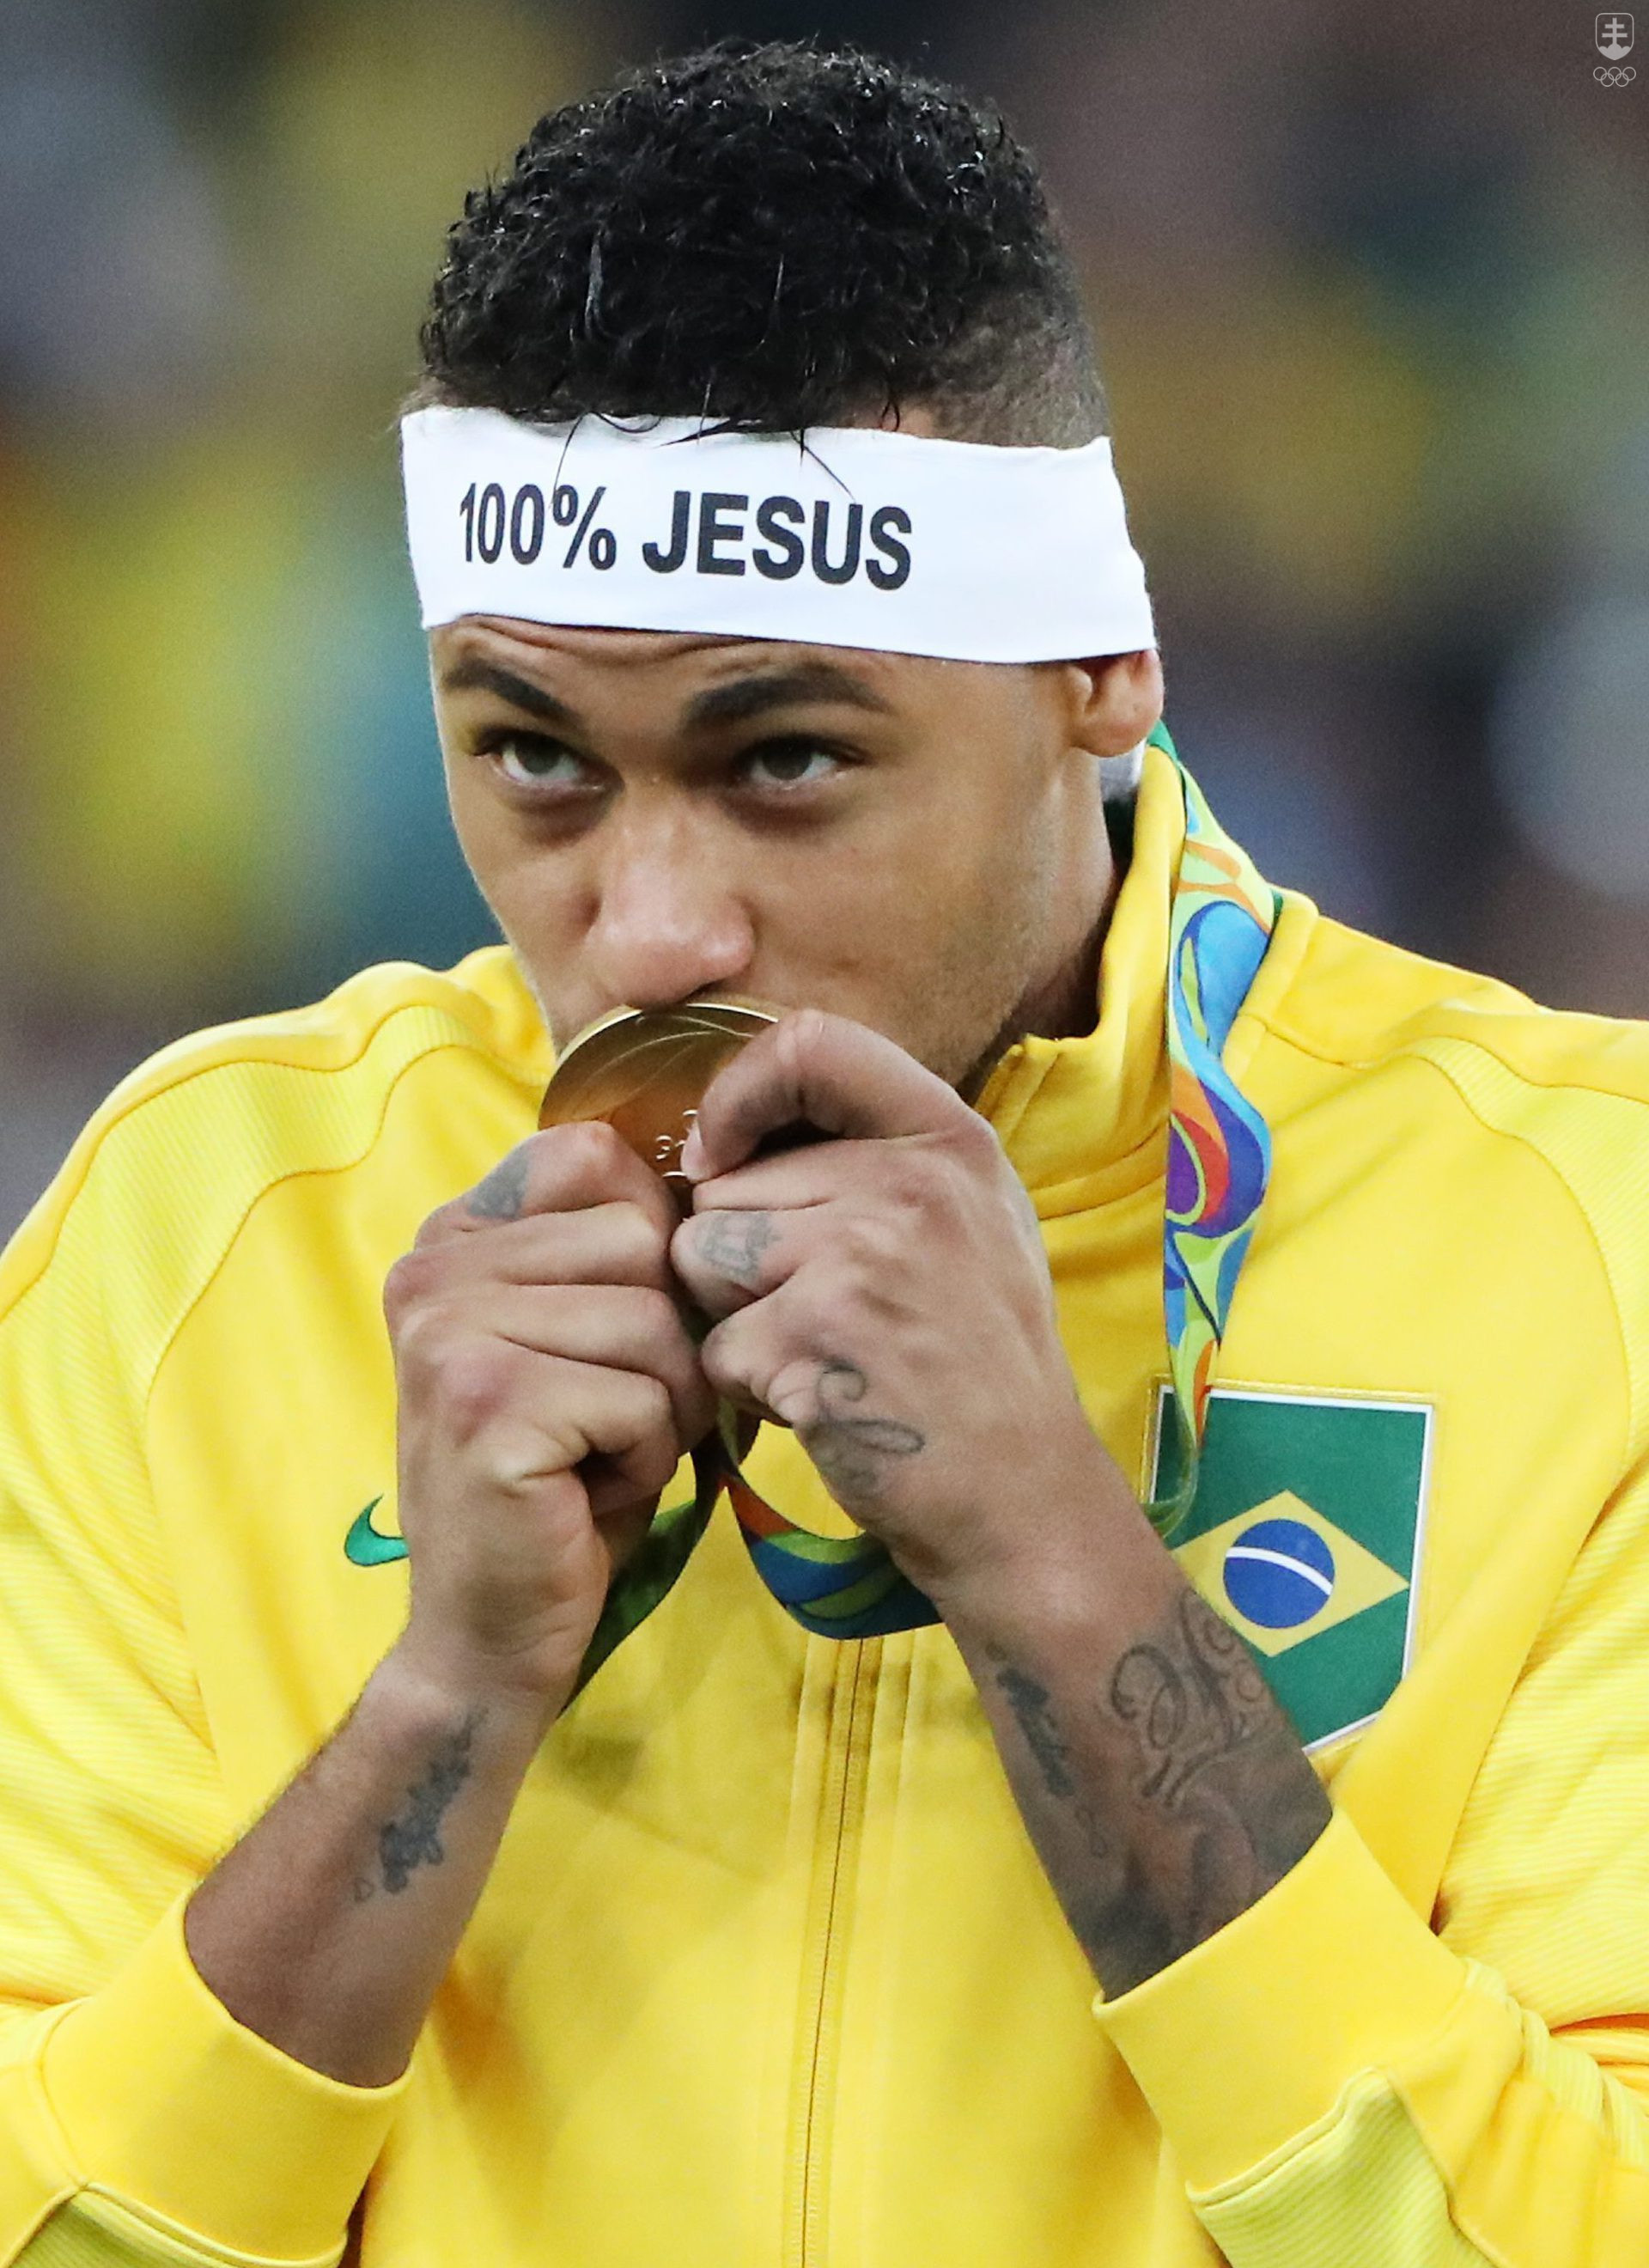 Brazílsky futbalista Neymar počas medailového ceremoniálu na OH 2016 v Riu de Janeiro vyjadril svoj náboženský postoj. 